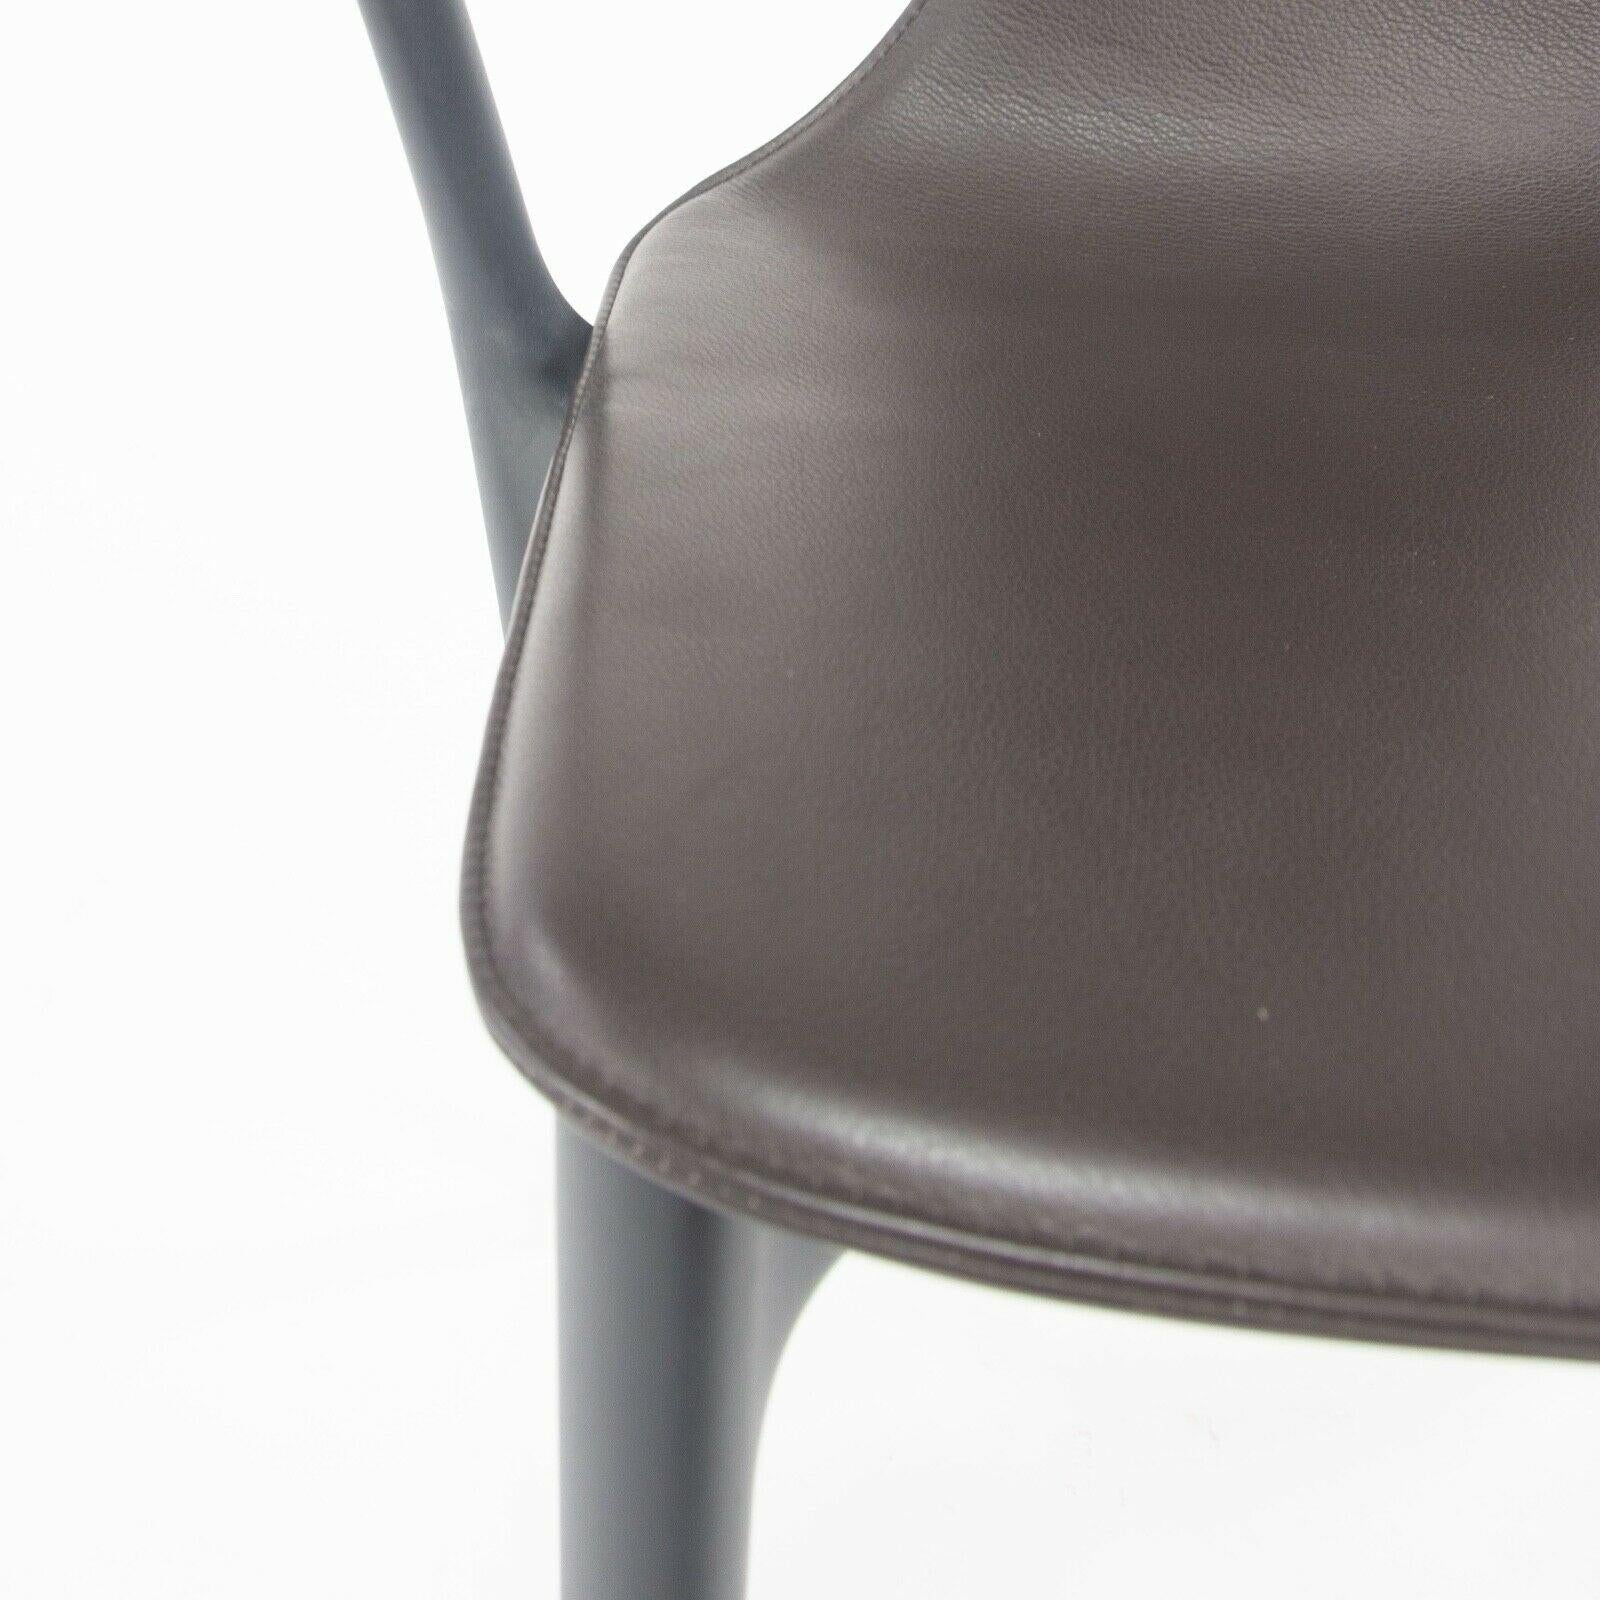 Zum Verkauf steht der Belleville Sessel, entworfen von Ronan und Erwan Bouroullec und hergestellt von Vitra. Dieser Stuhl wurde mit einem schwarzen Kunststoffrahmen und einer braunen ledergepolsterten Sitzschale ausgestattet. Der Zustand wird als